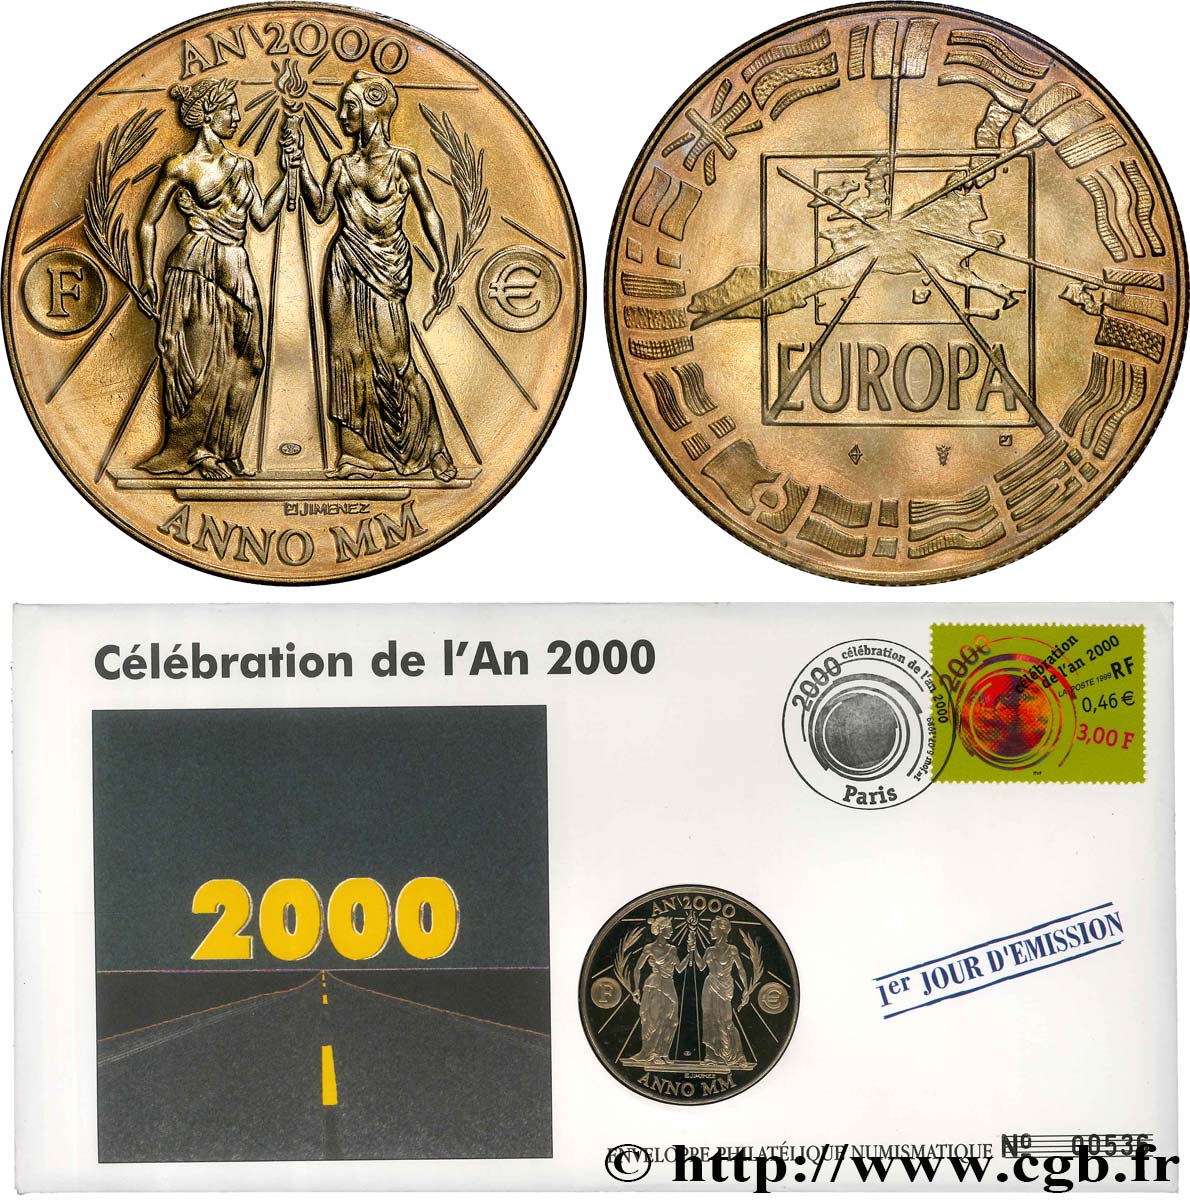 V REPUBLIC Enveloppe “timbre médaille”, Passage dans le IIIe millénaire MS